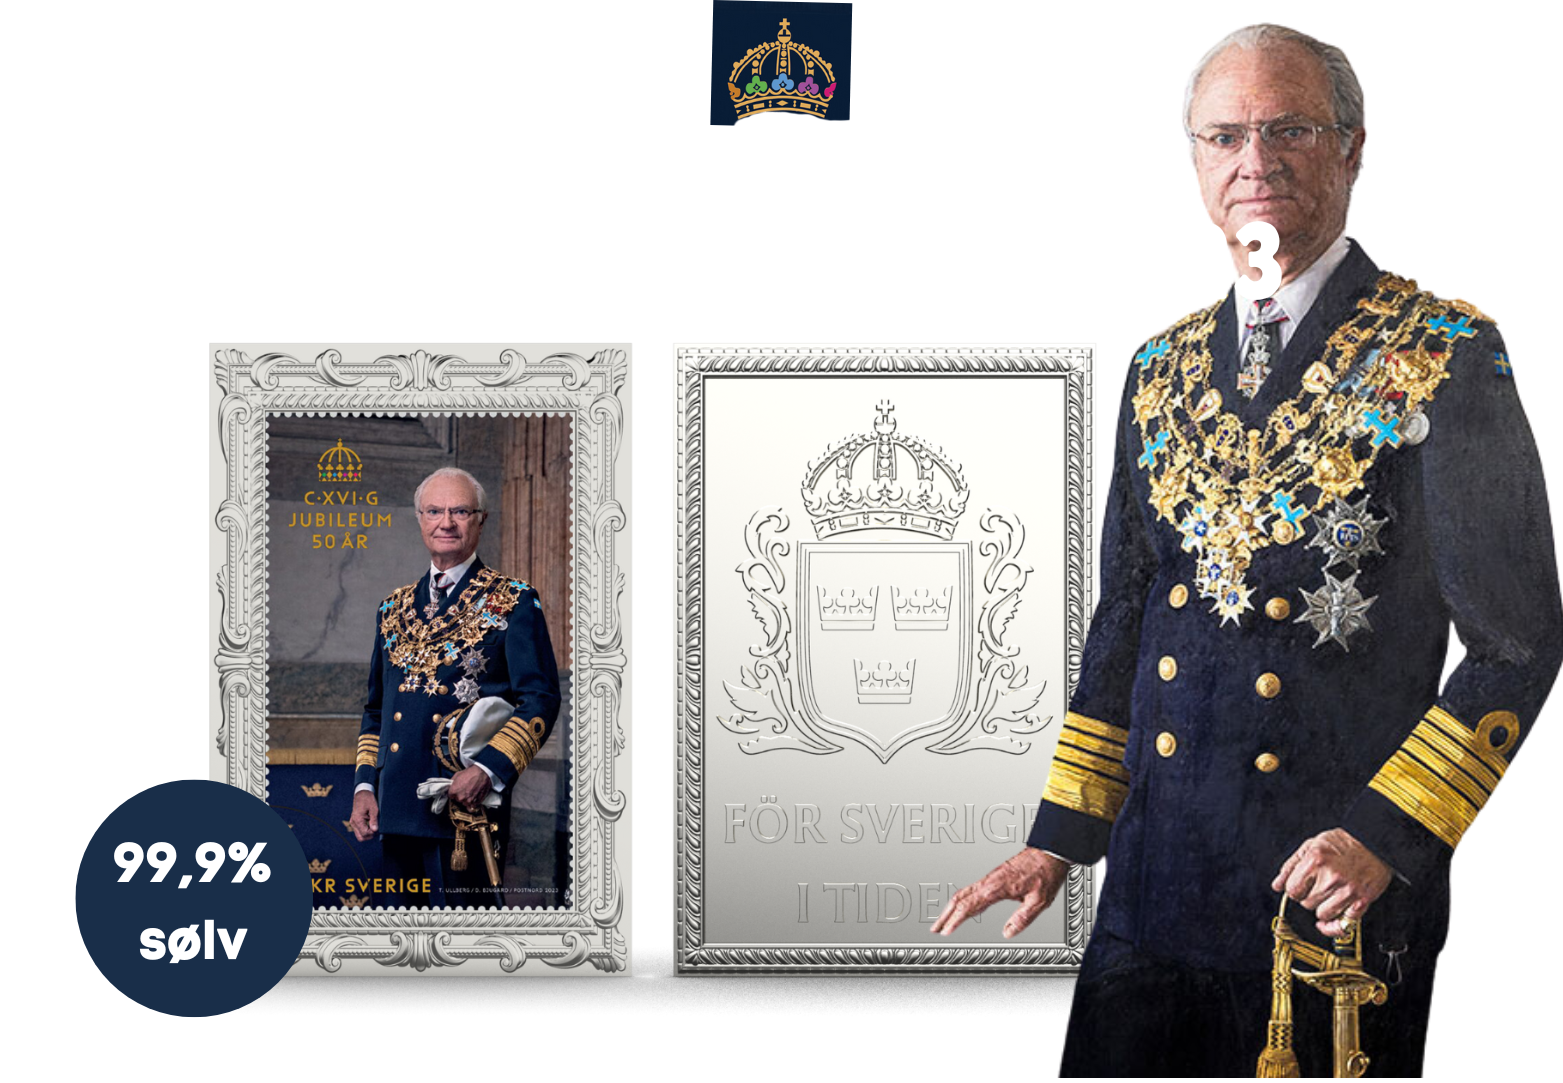 Carl XVI Gustaf 1973-2023 frimærkebarre i 99,9% sølv